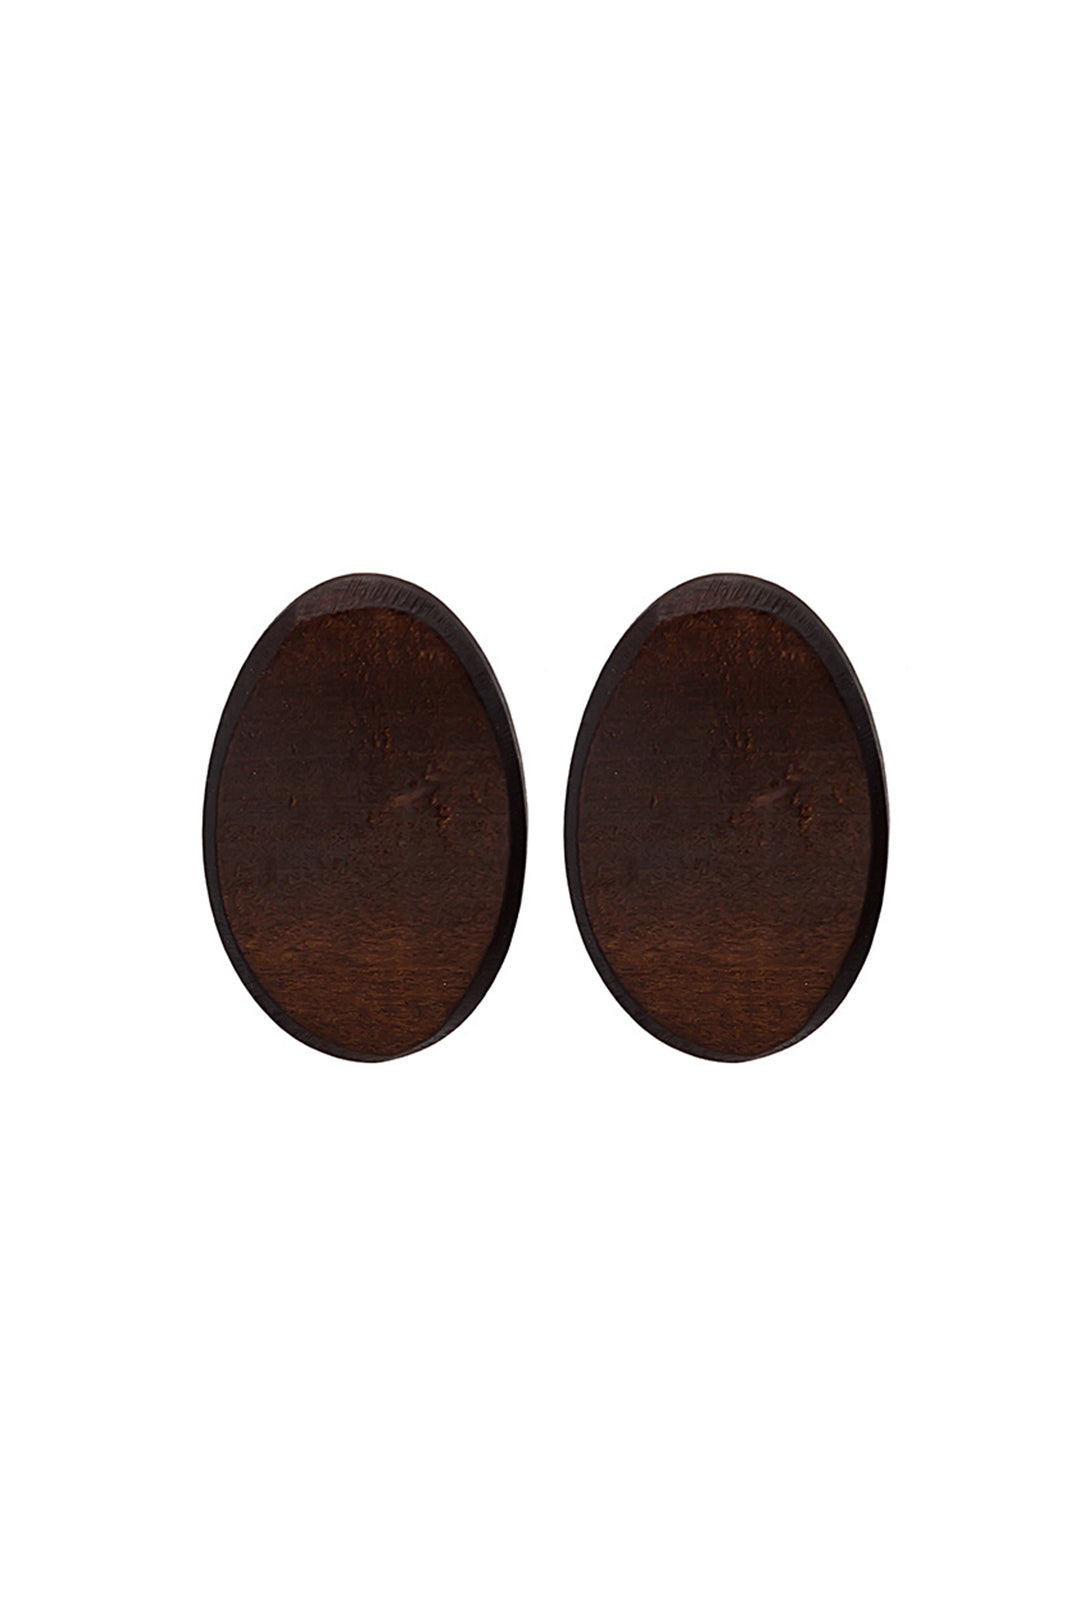 Boho Oval Wooden Earrings